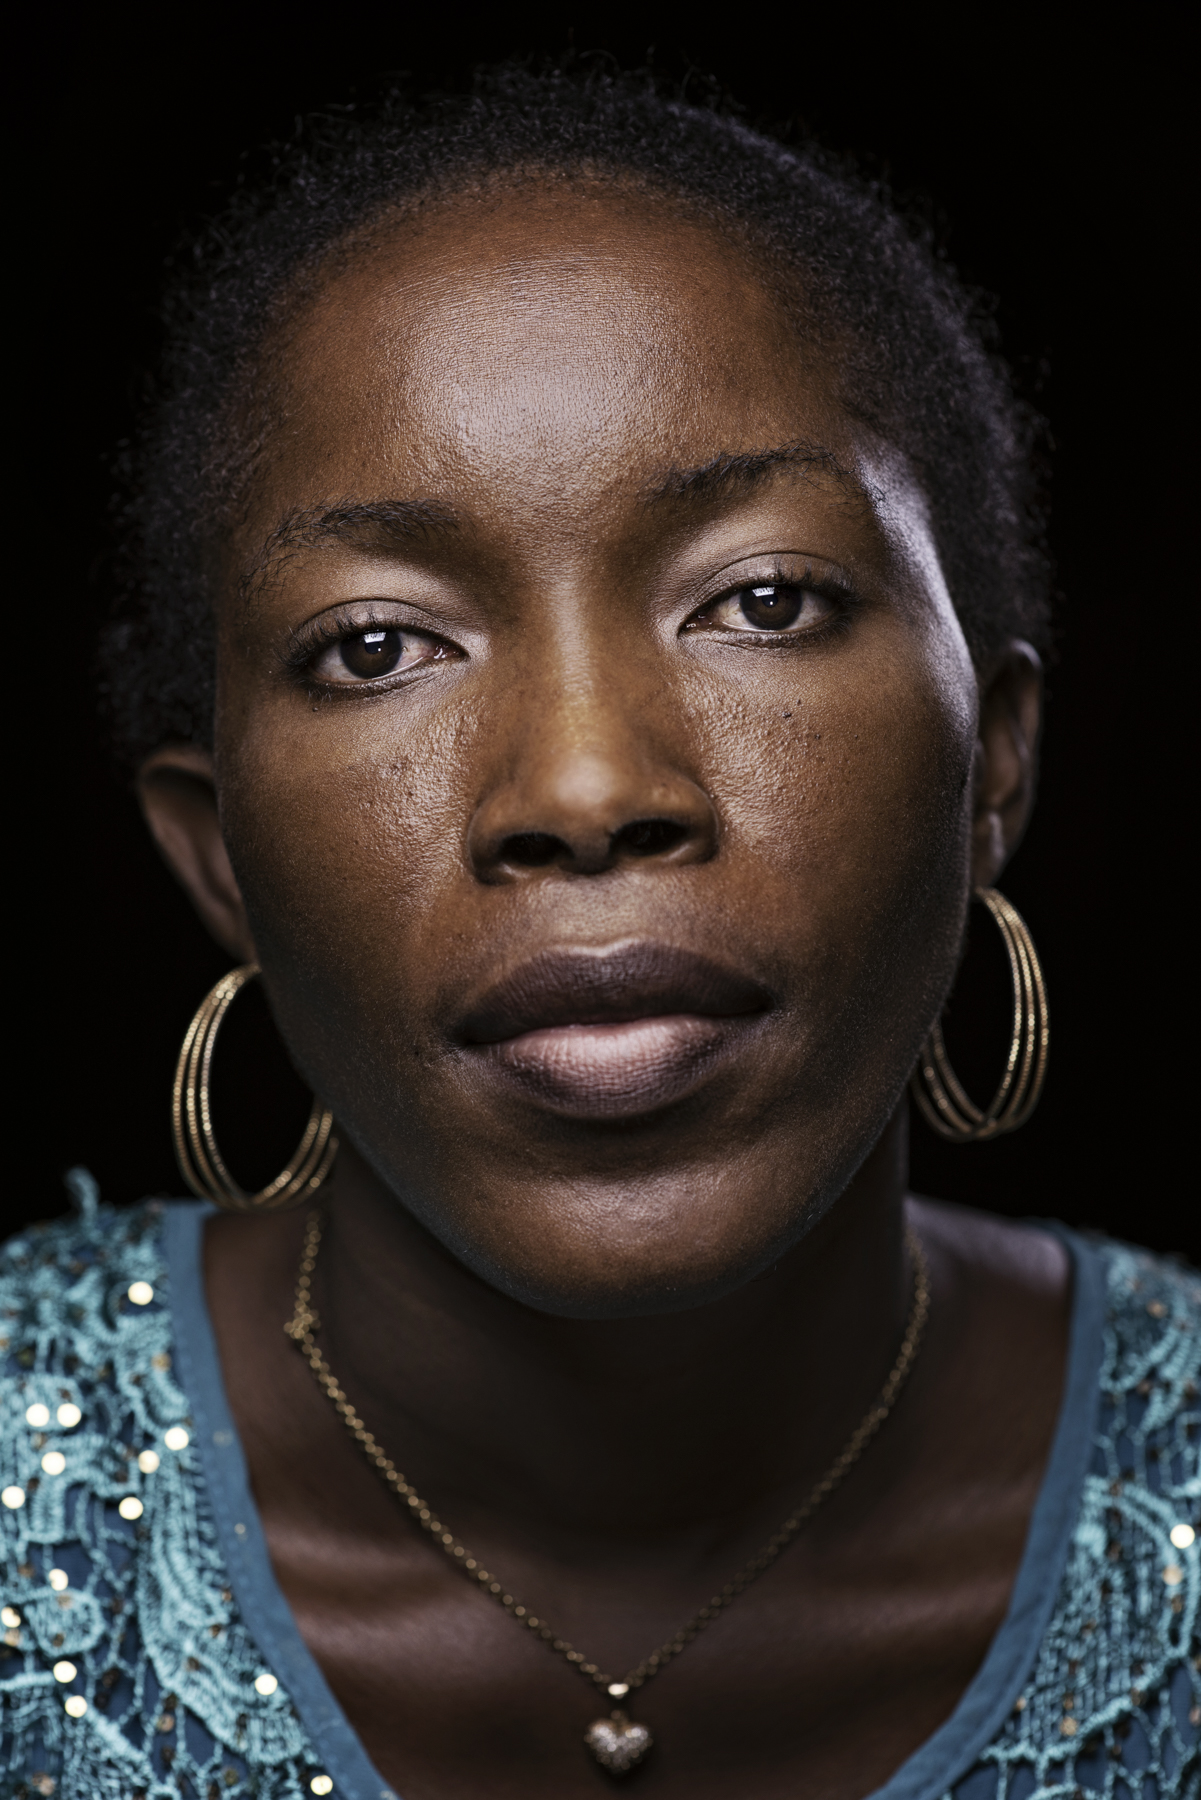  Ivory Coast, Medoh, May 2015

Josiane Adopo, 40.

Francesco Zizola / NOOR 